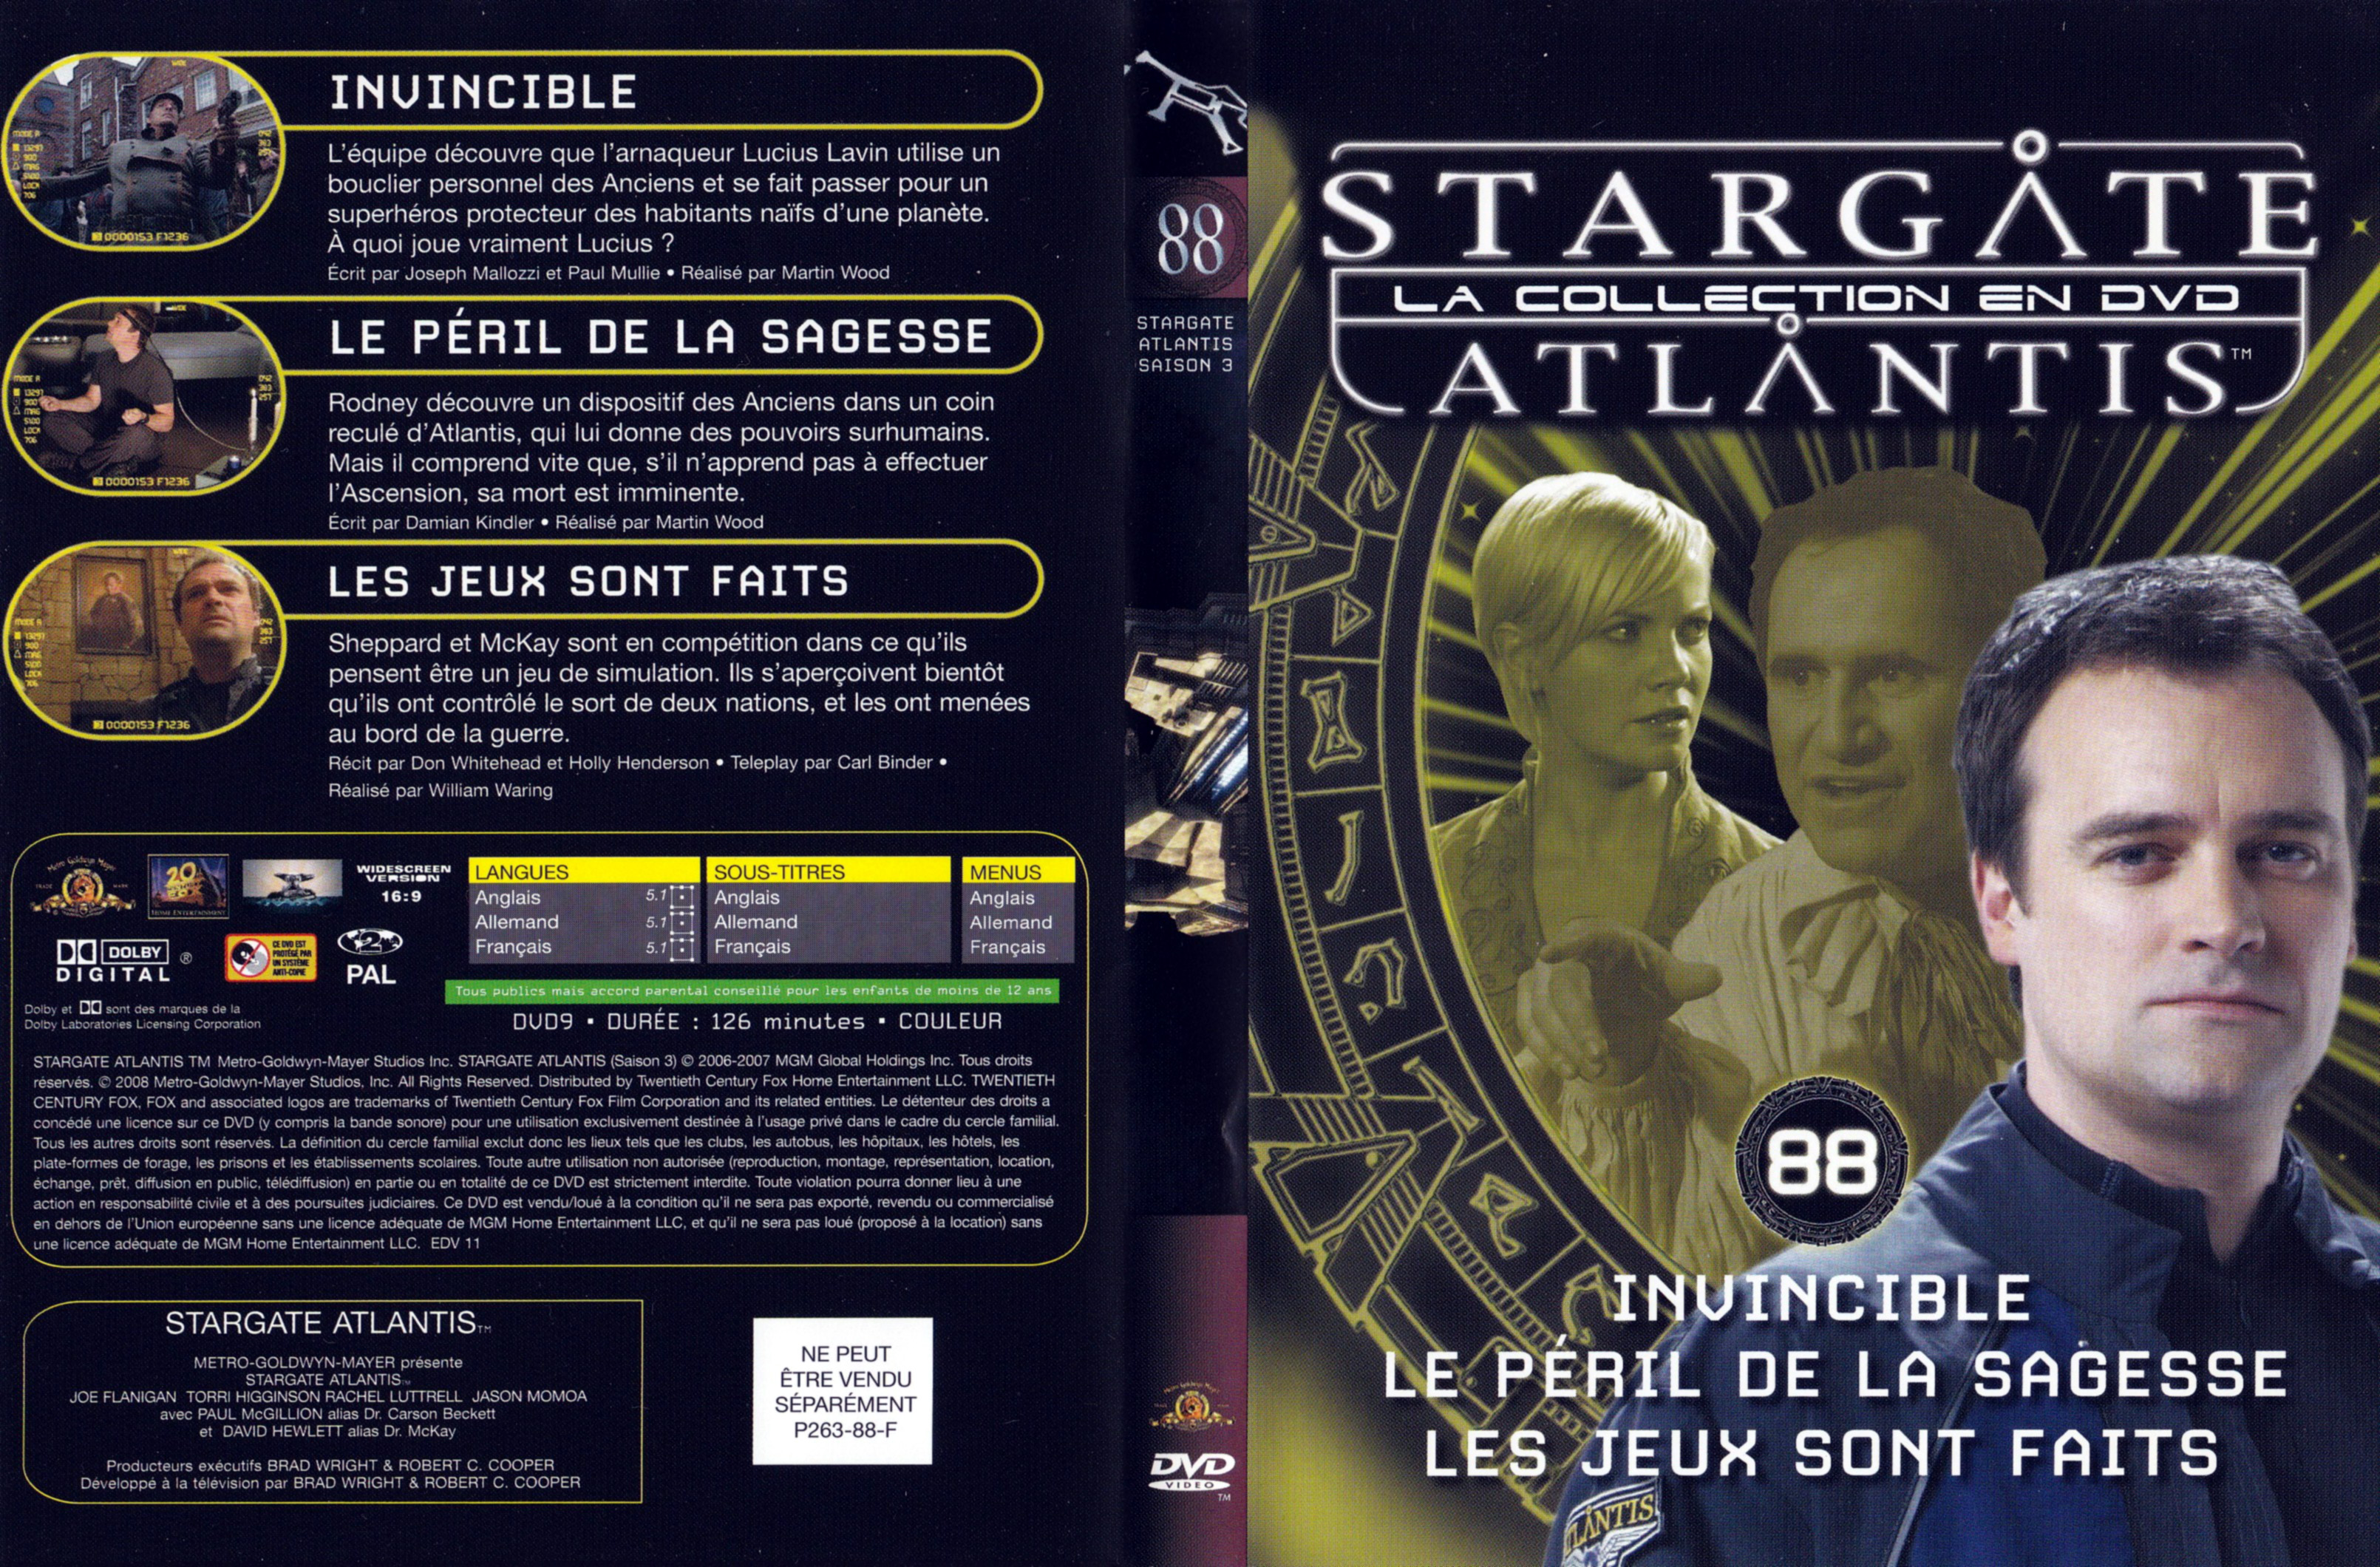 Jaquette DVD Stargate SG1 Atlantis Saison 3 vol 88